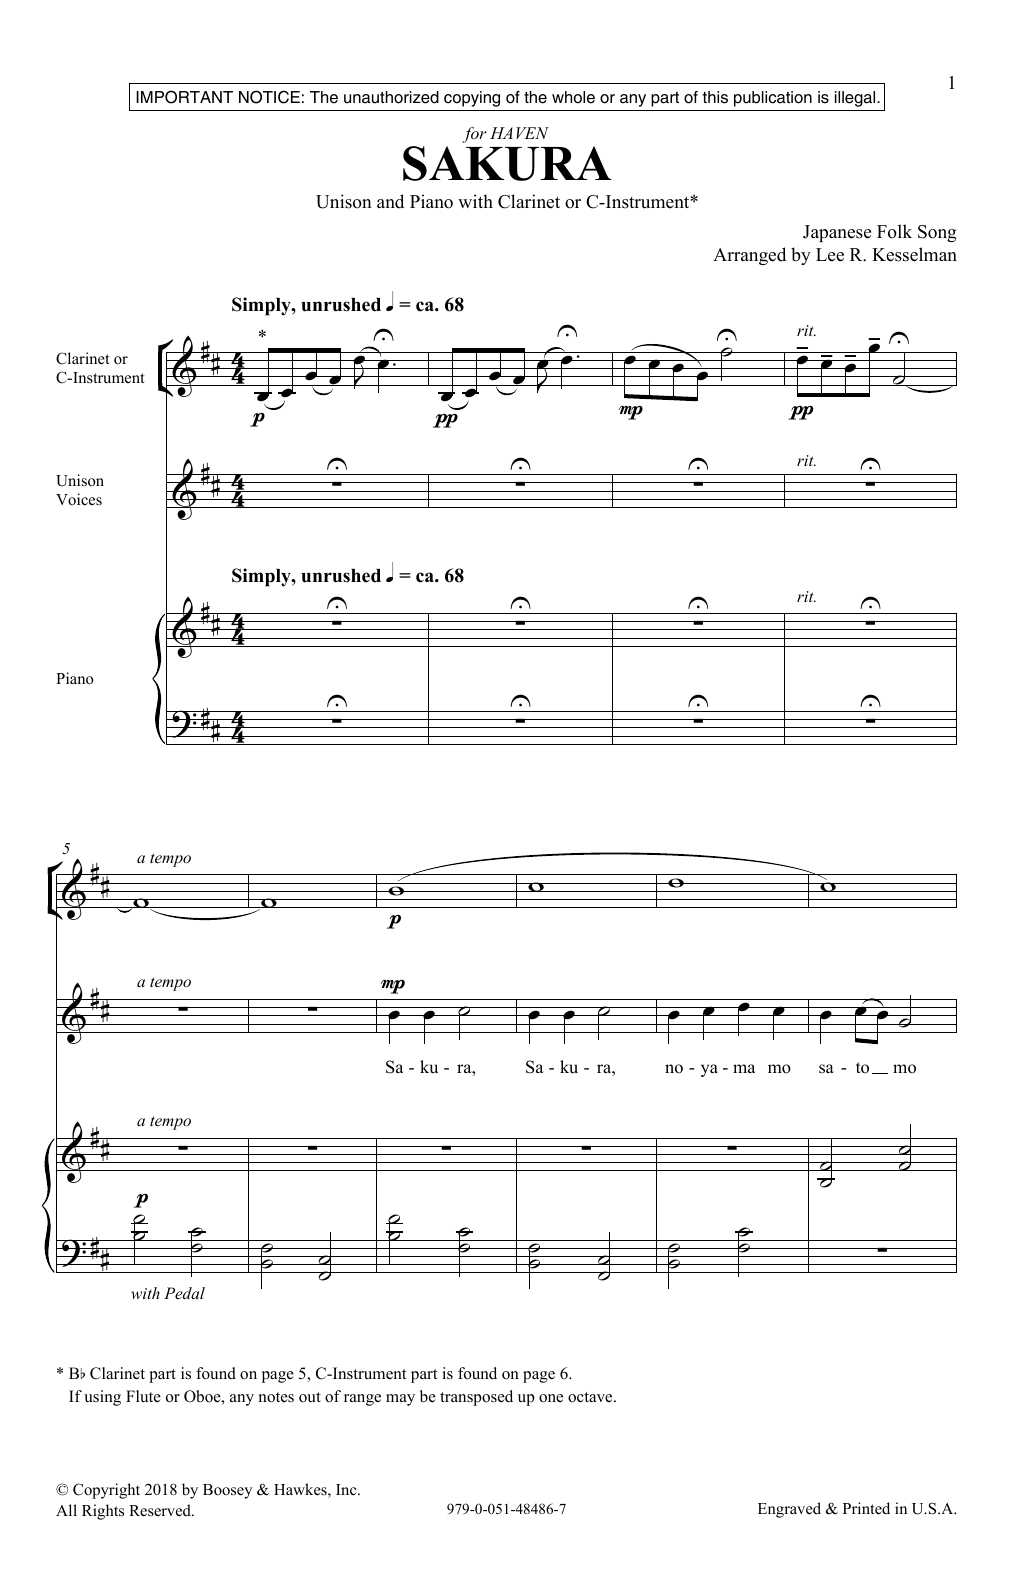 Lee Kesselman Sakura Sheet Music Notes & Chords for Unison Choral - Download or Print PDF